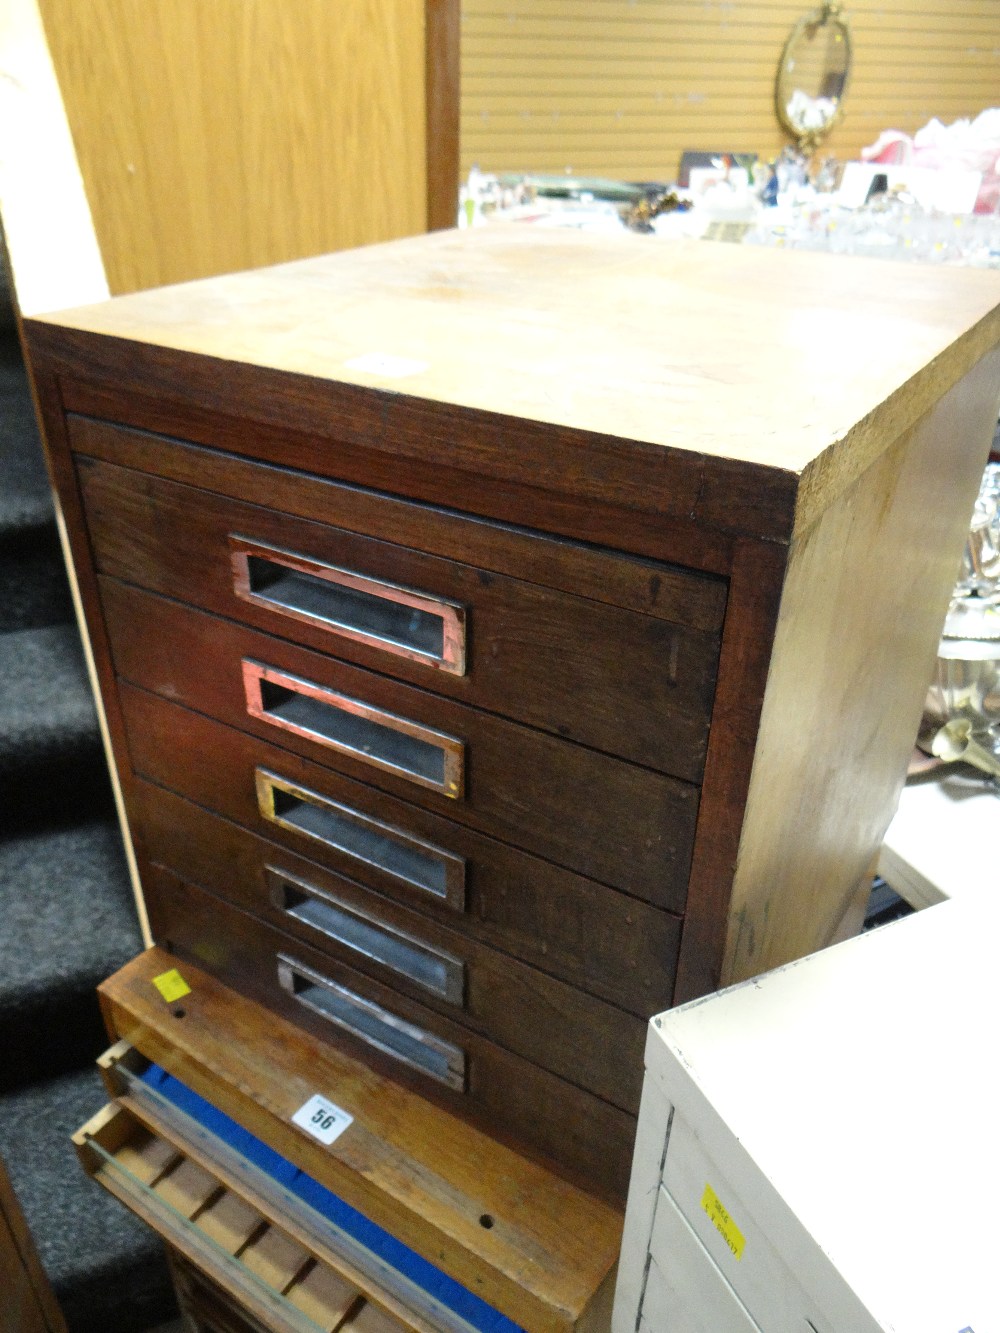 A five-drawer specimen cabinet